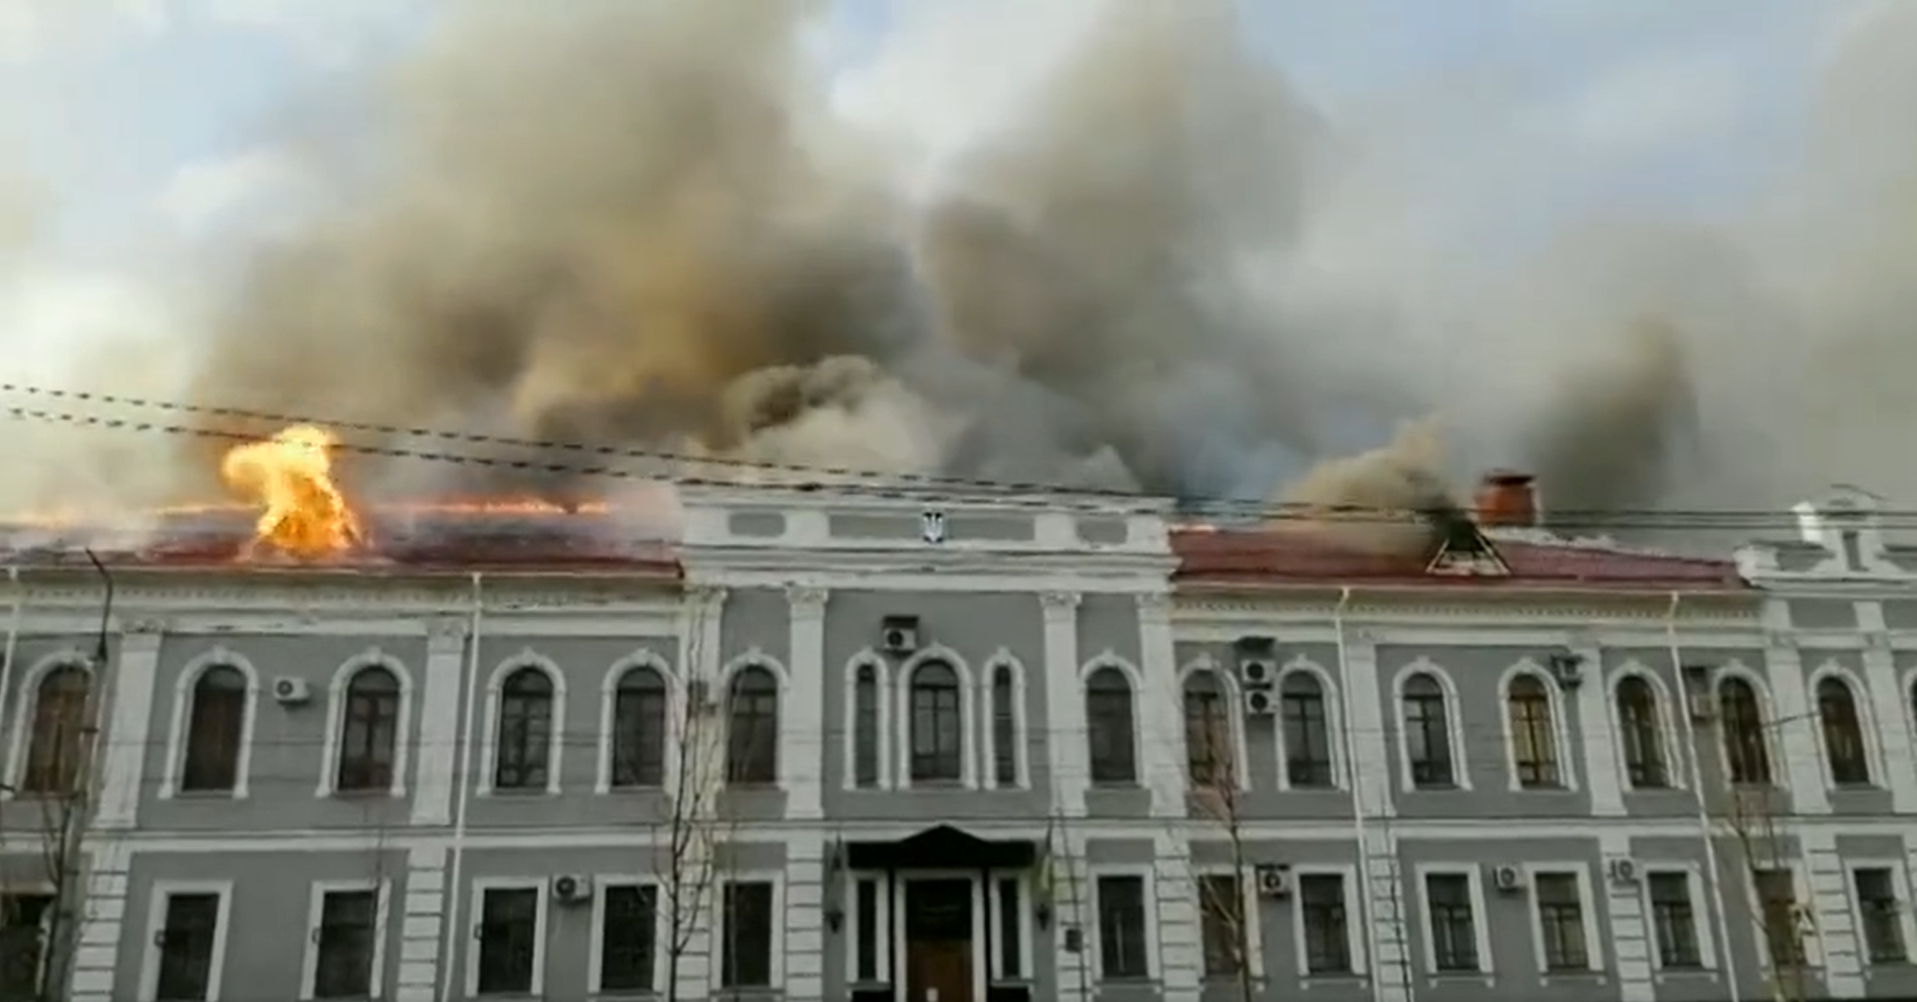 Proyectiles impactaron en una agencia regional de seguridad de Ucrania (VIDEO)